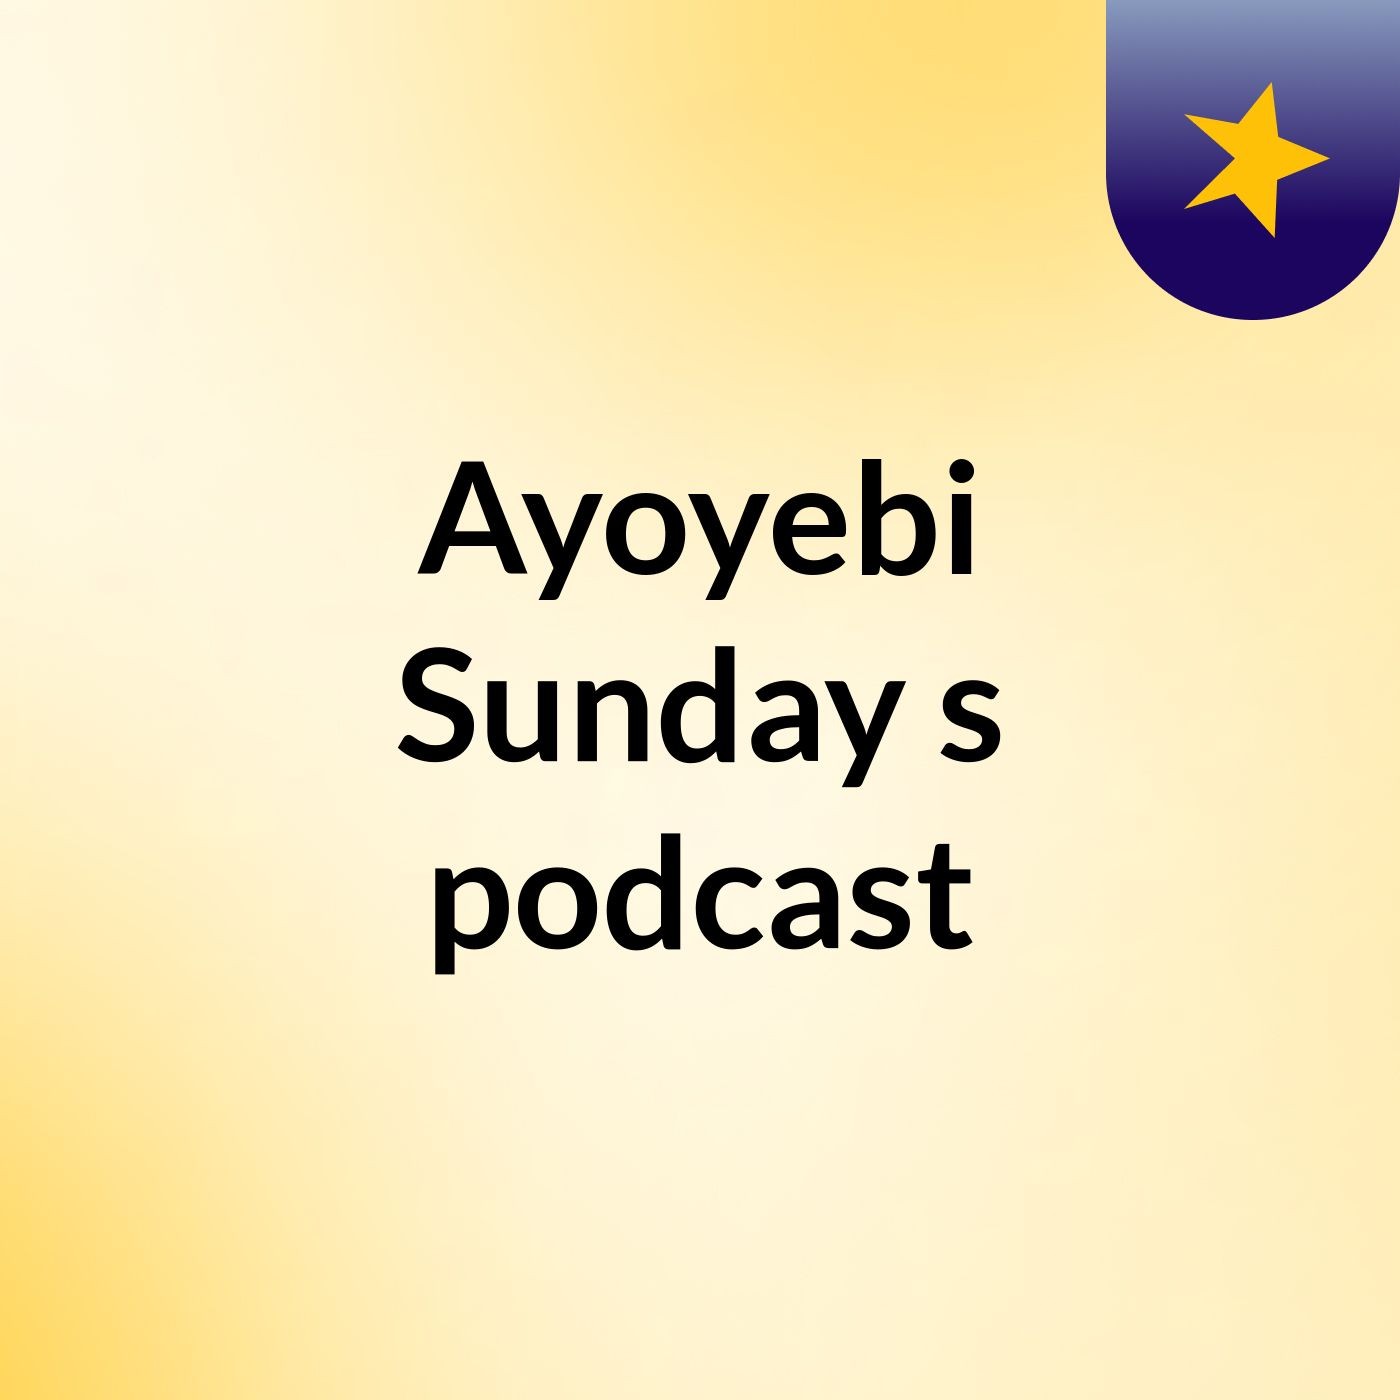 Episode 4 - Ayoyebi Sunday's podcast